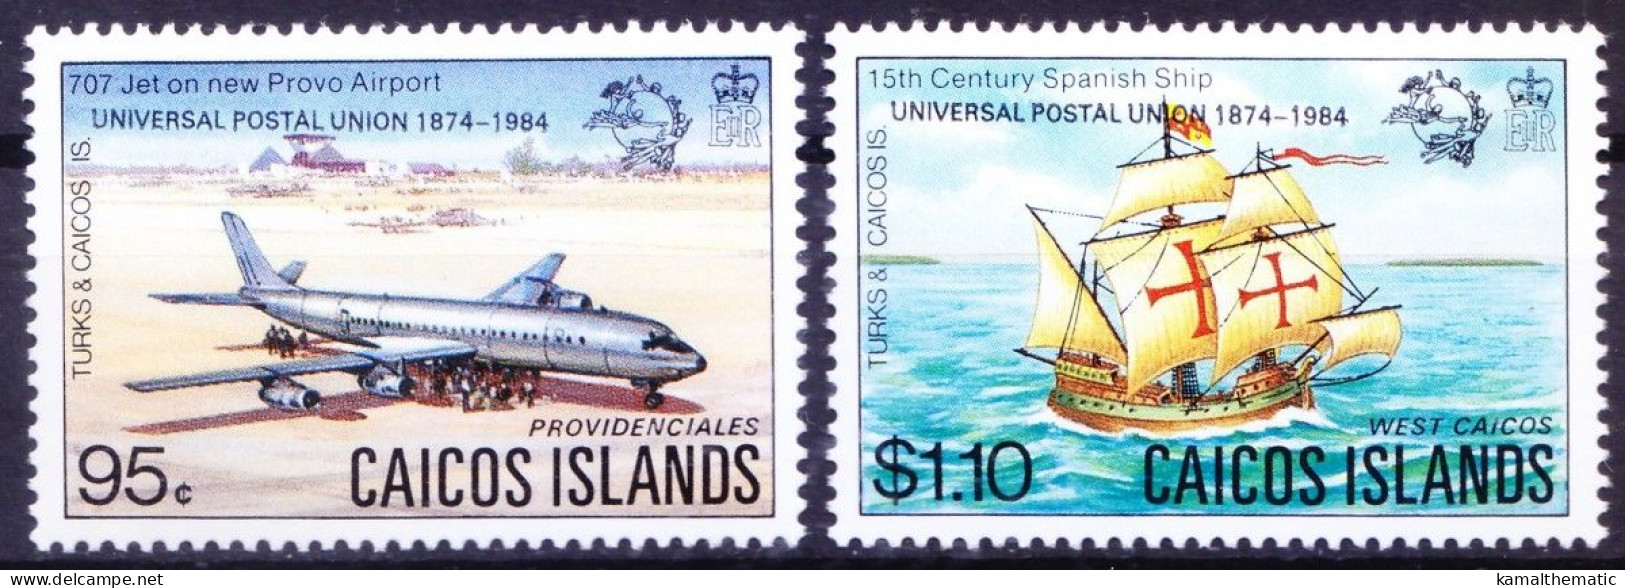 Caicos Islands 1984 MNH 2v, U.P.U. Hamburg, Overprint - UPU (Unione Postale Universale)